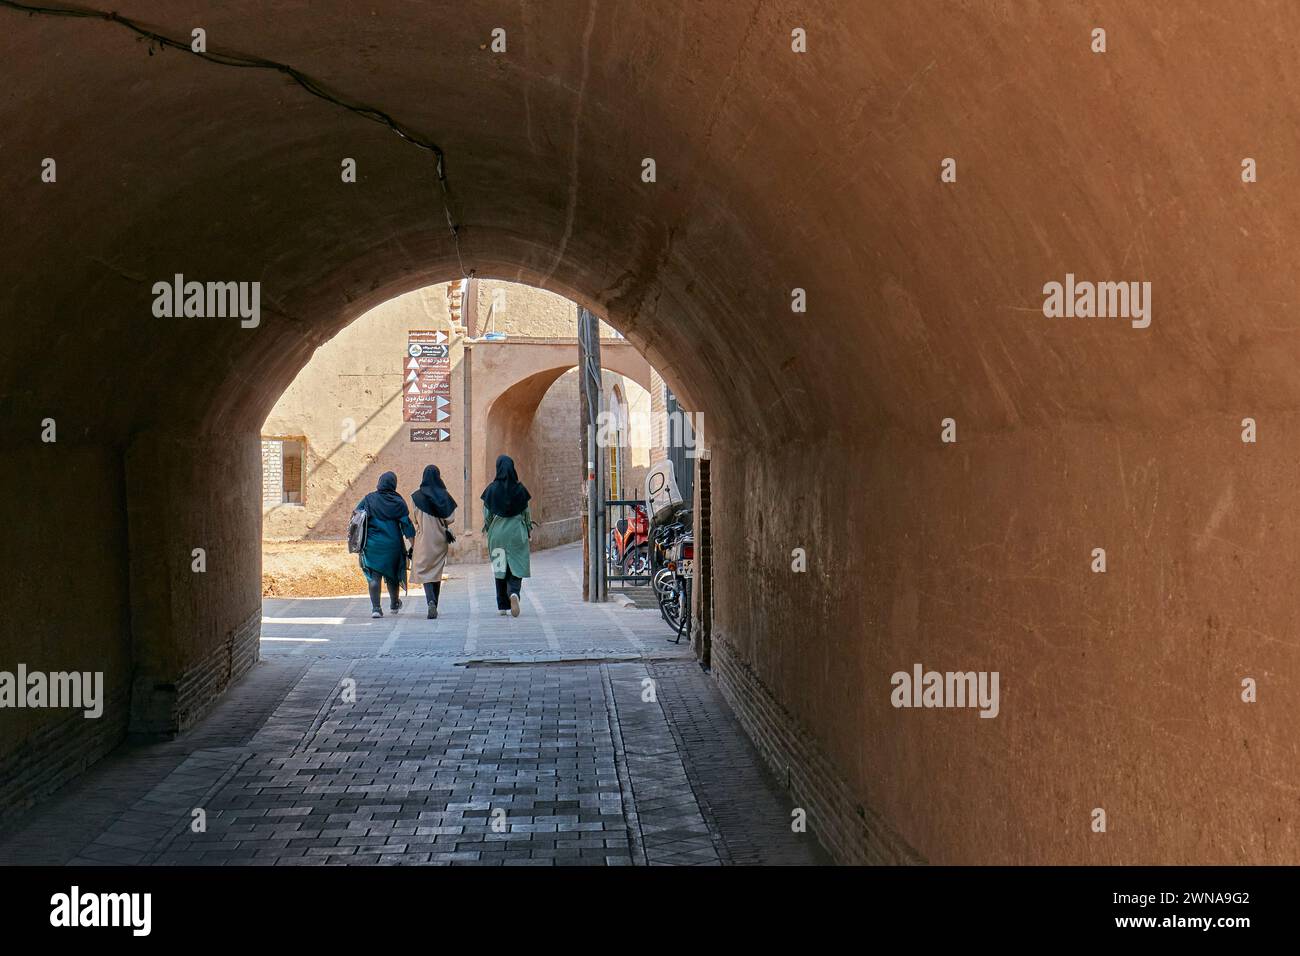 Trois femmes locales marchent ensemble dans une rue étroite de la vieille ville de Yazd, en Iran. Banque D'Images